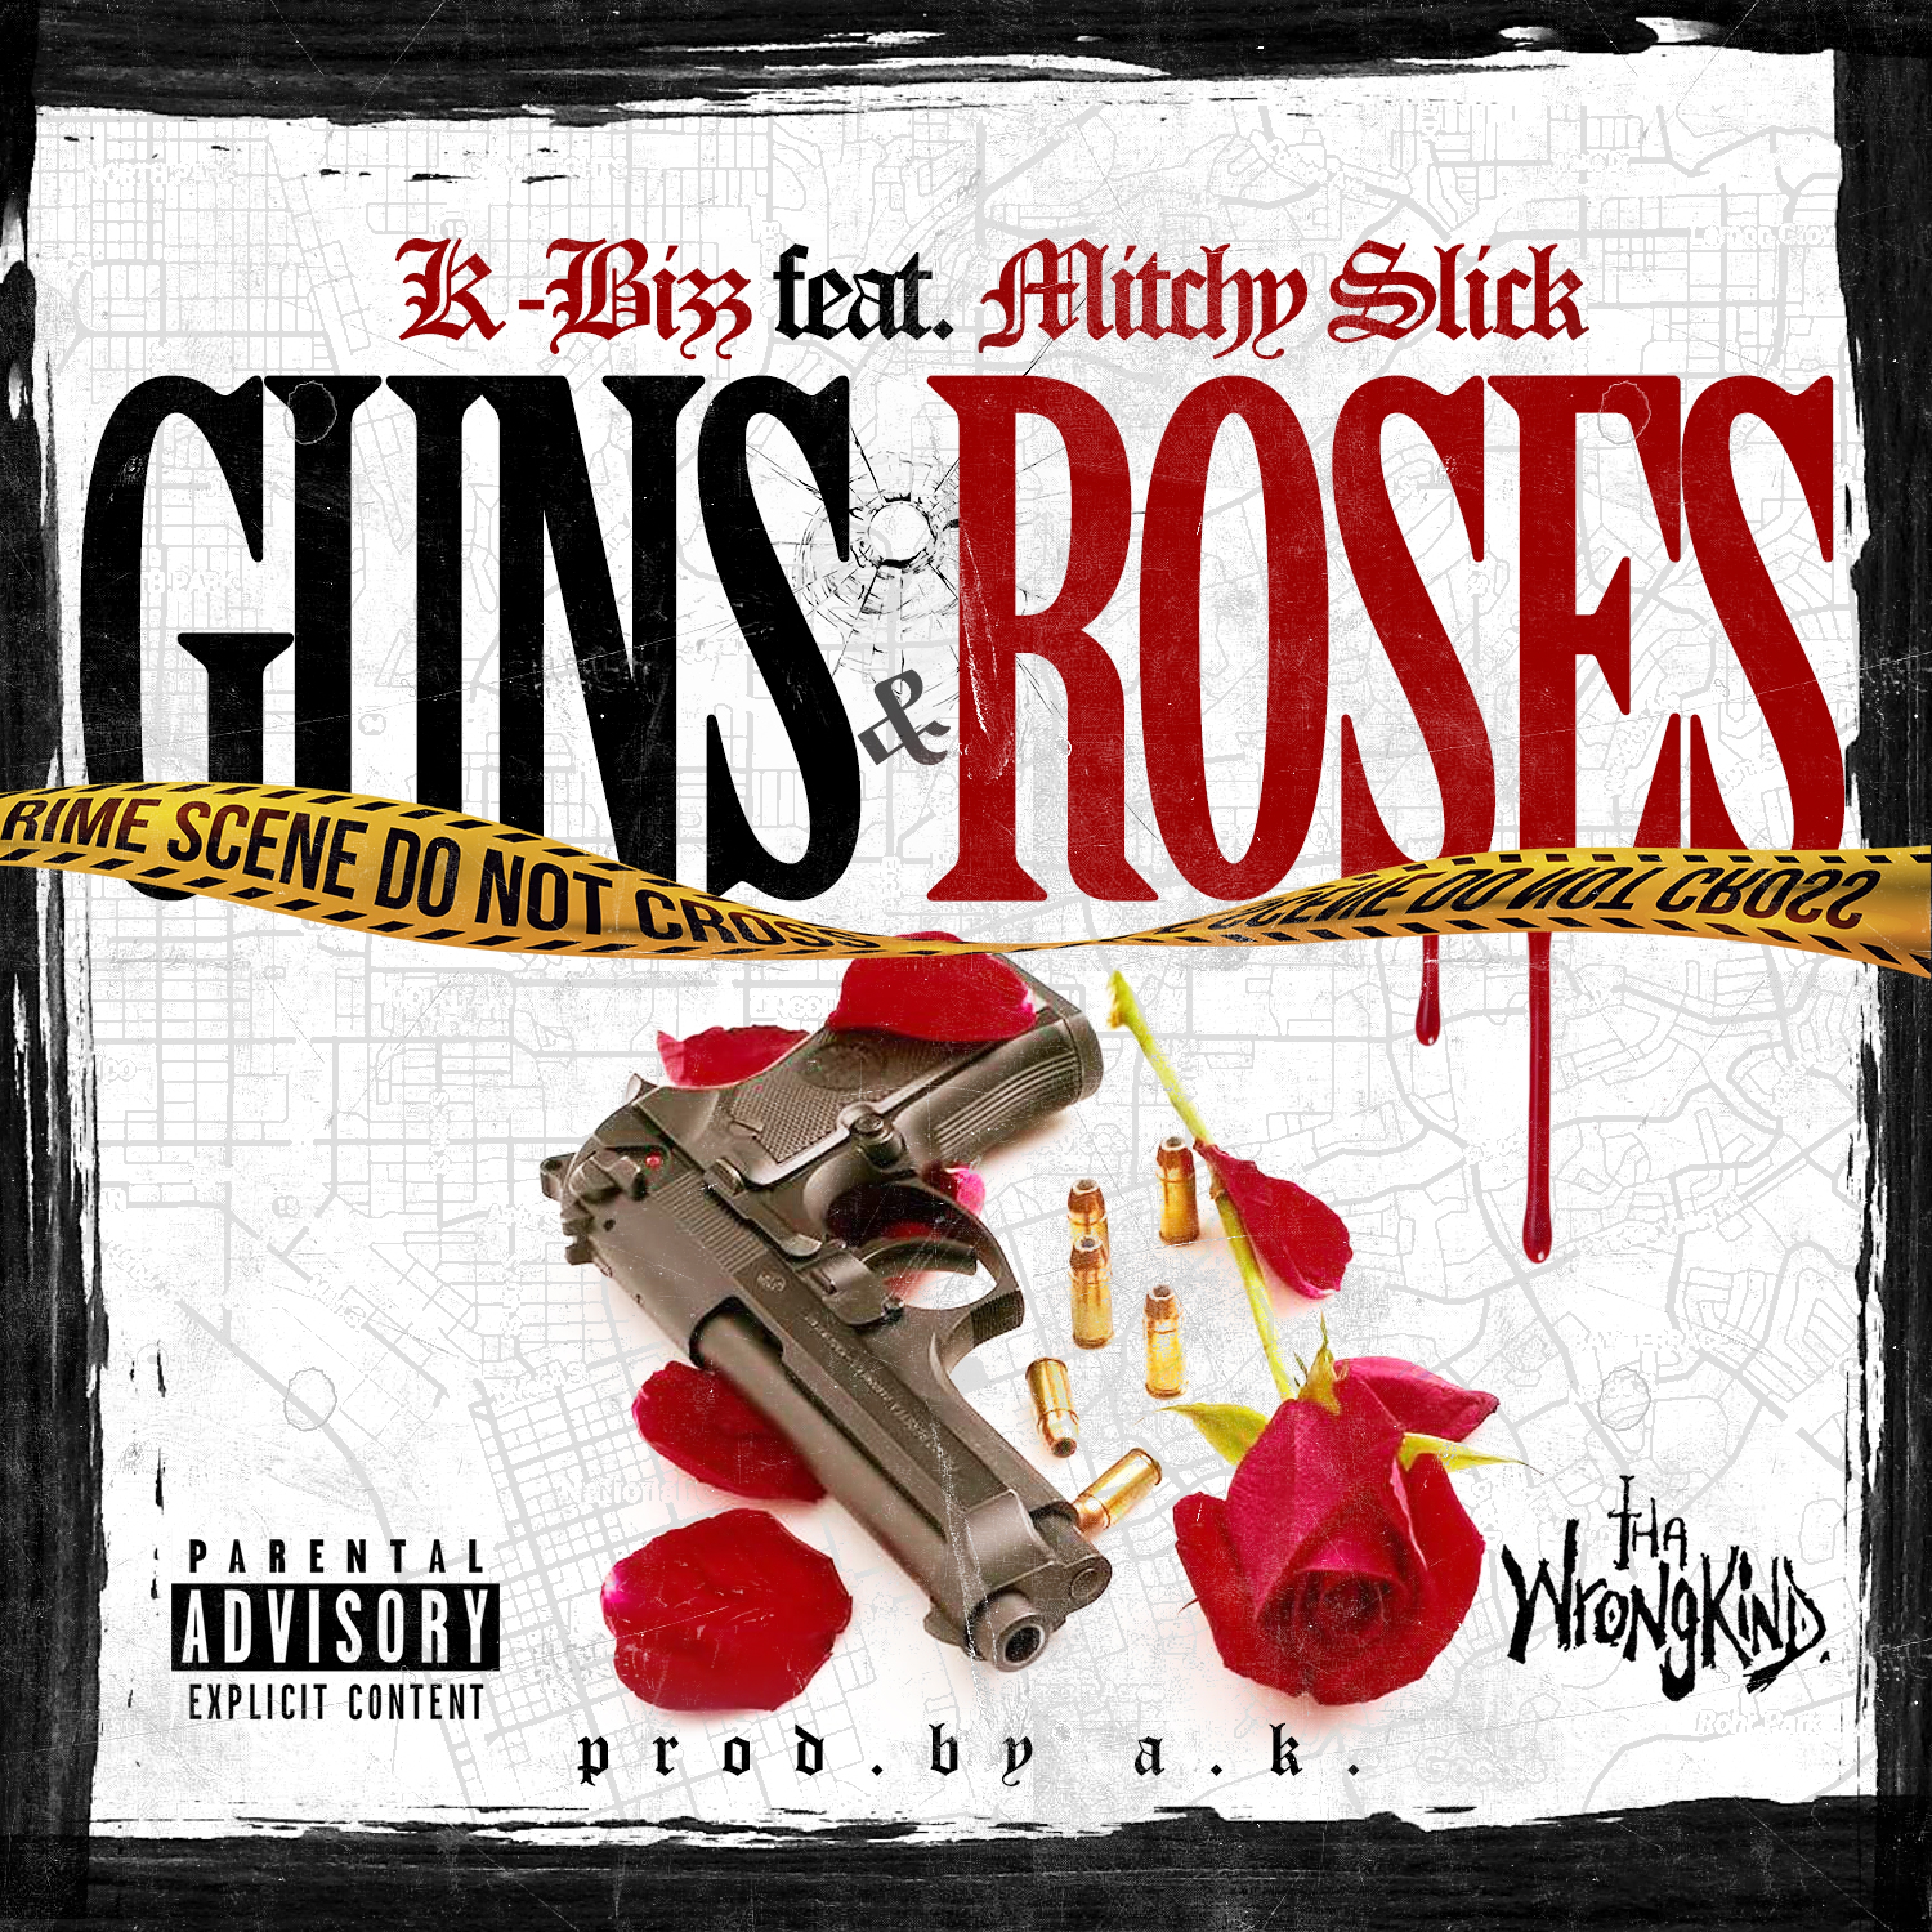 Guns & Roses